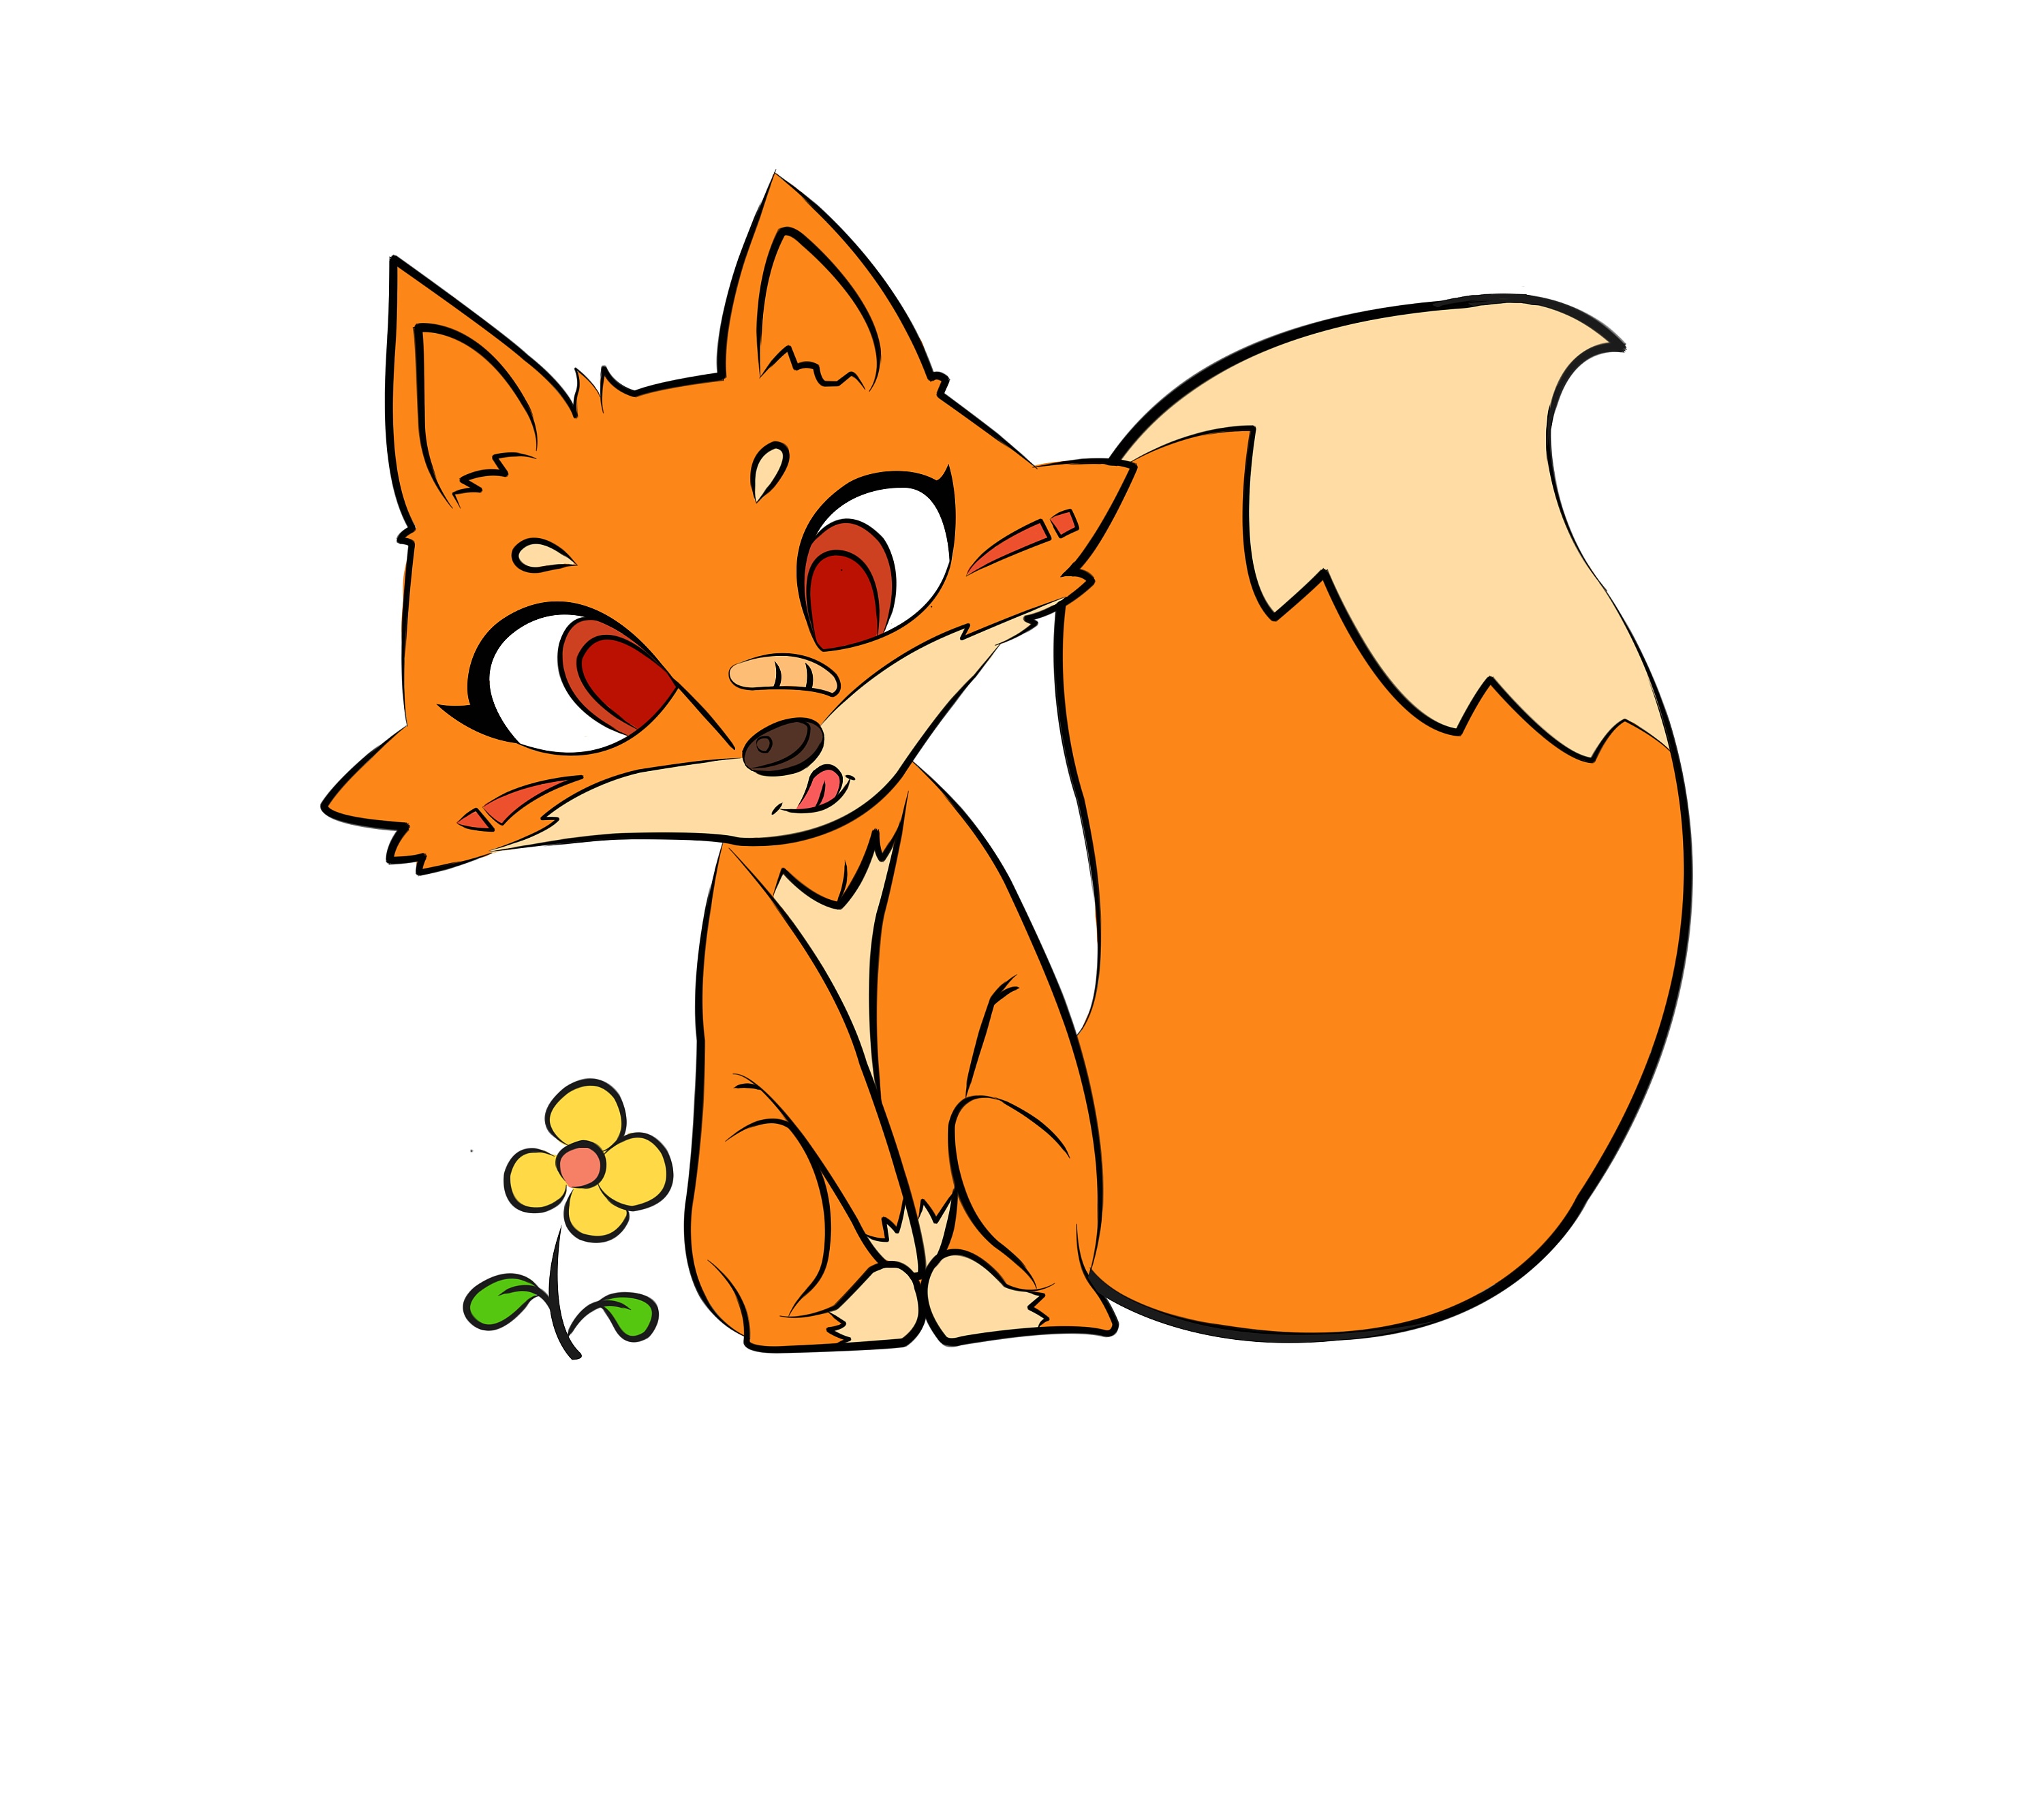 可愛卡通小狐狸PNG圖案素材免費下載 - 尺寸1044 × 1090px - 圖形ID400201152 - Lovepik